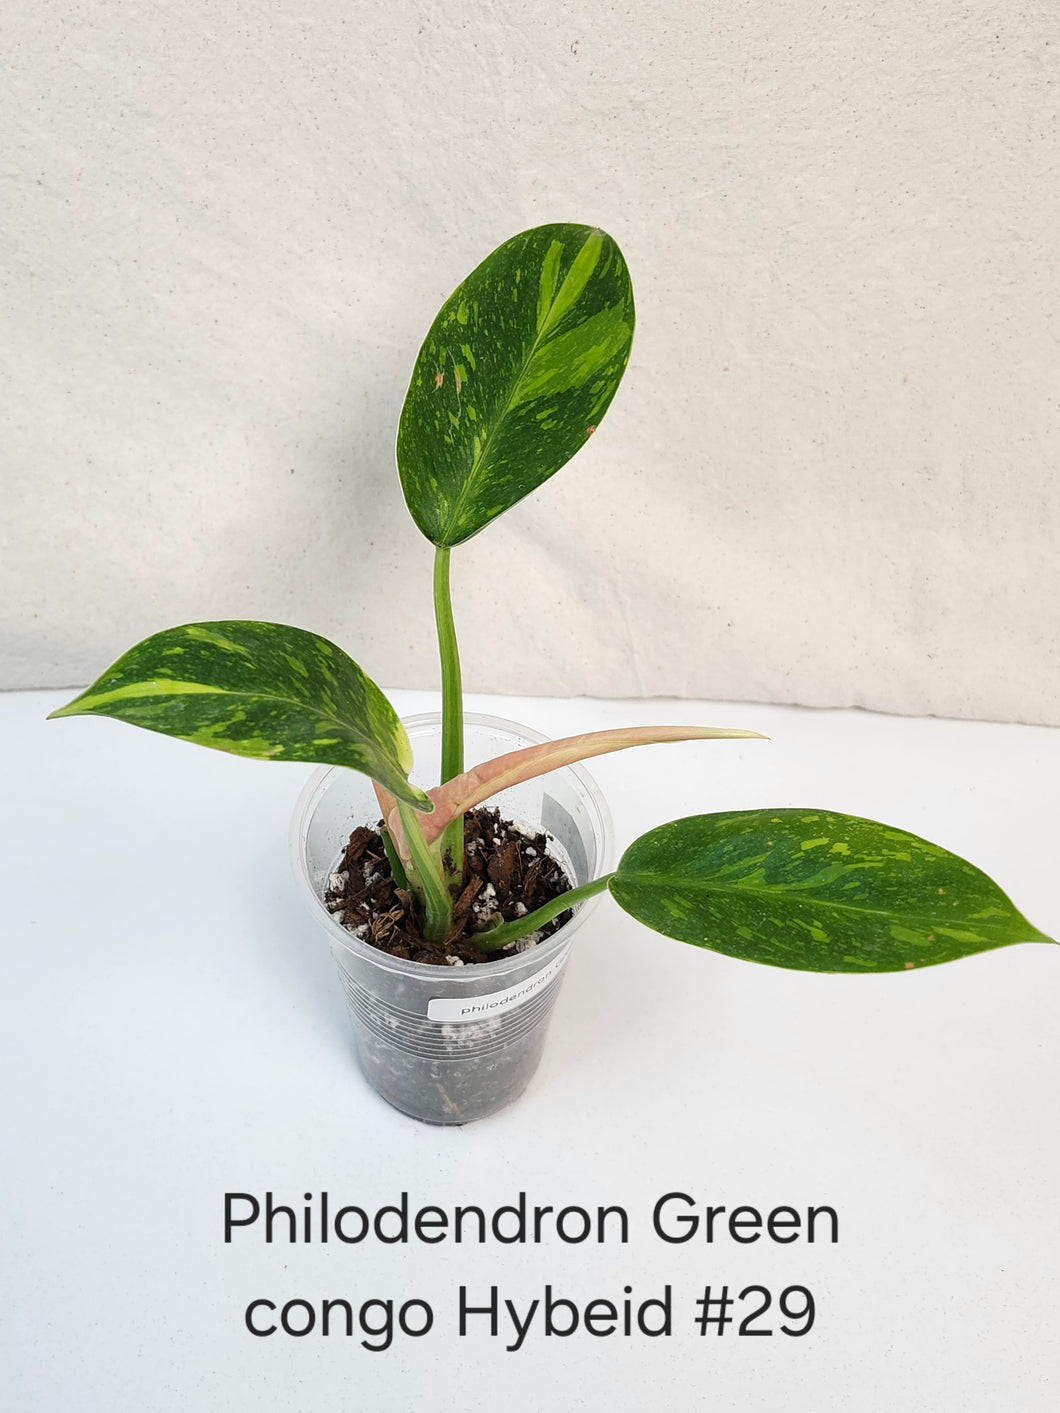 Philodendron green congo hybrid variegata #29